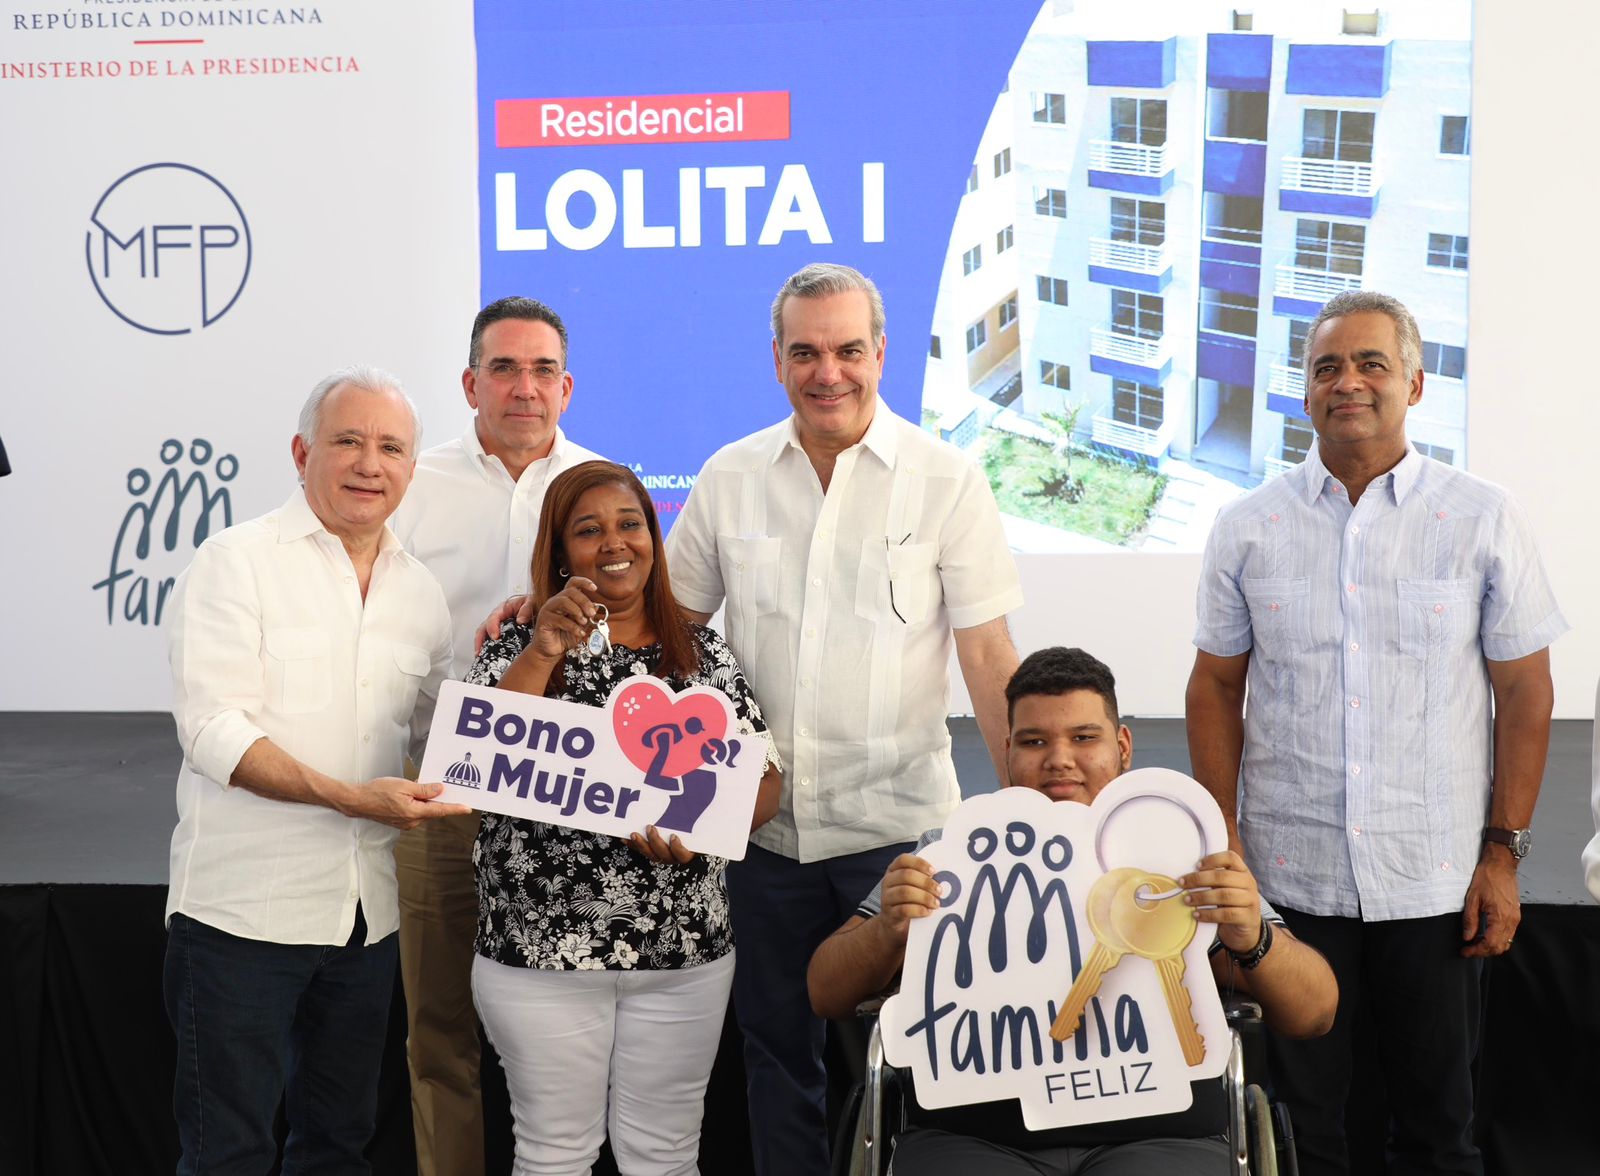 REPÚBLICA DOMINICANA: Presidente Abinader entrega 168 viviendas en Manoguayabo